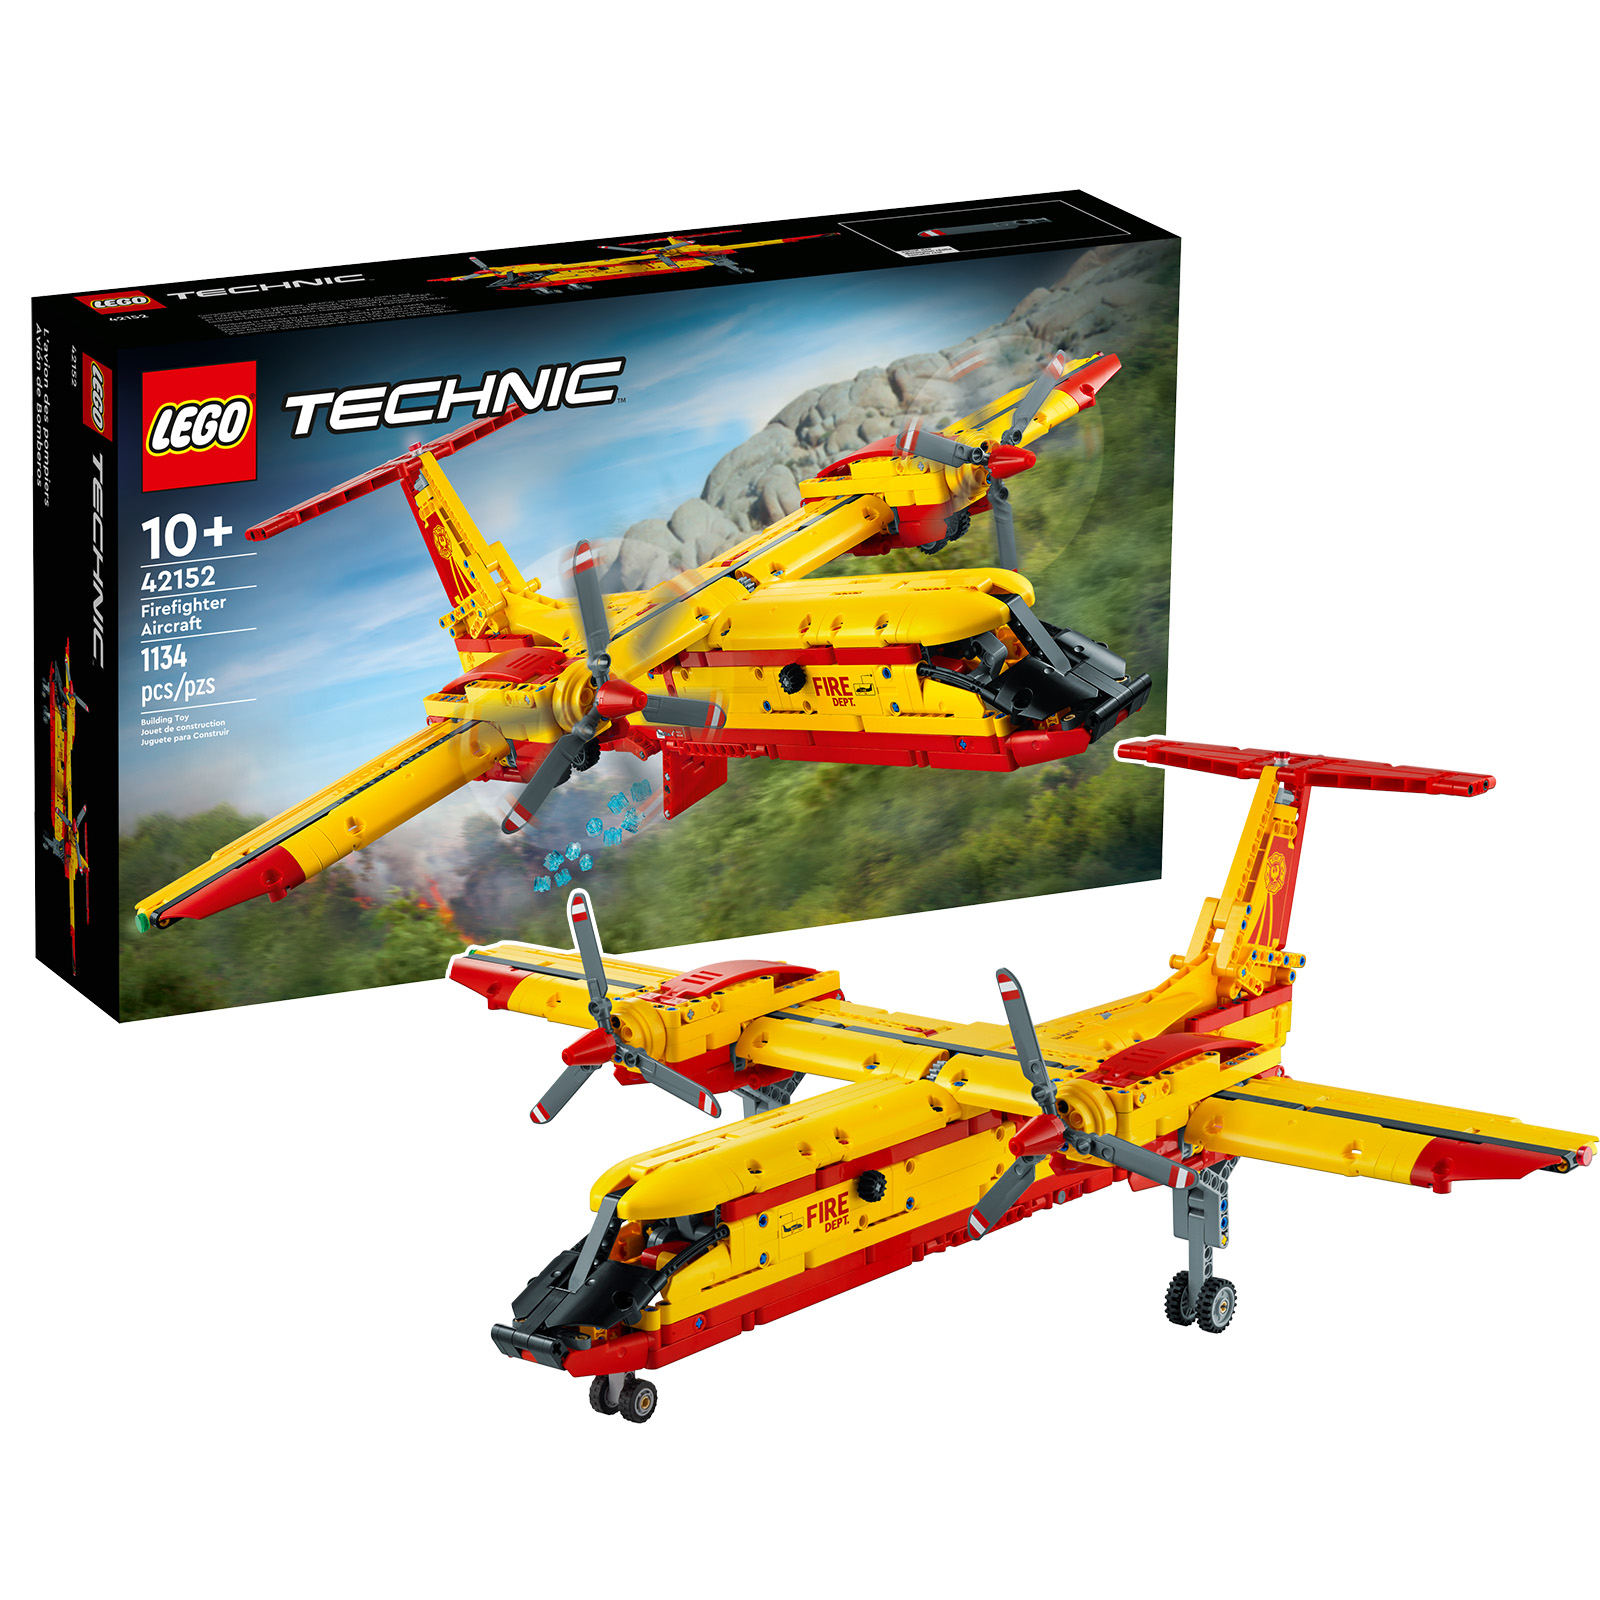 في متجر LEGO: مجموعة LEGO Technic 42152 Firefighter Aircraft متاحة في الطلب المسبق